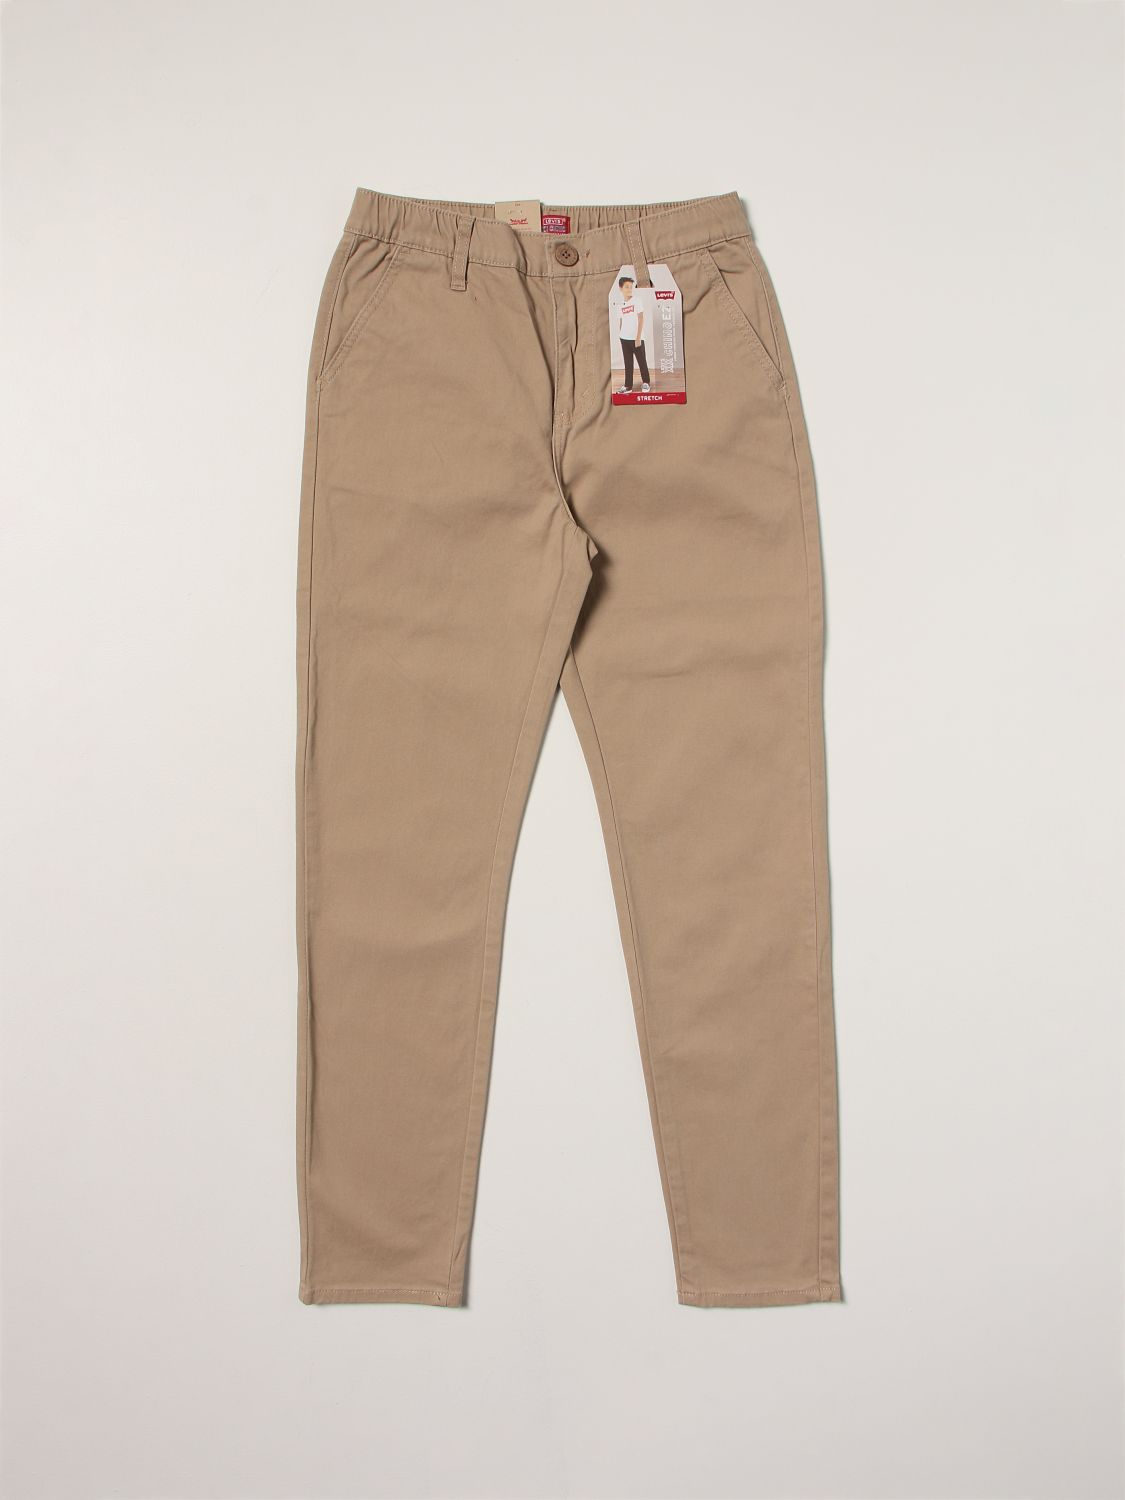 LEVI'S: pants for boys - Beige | Levi's pants 9ED520 online on 